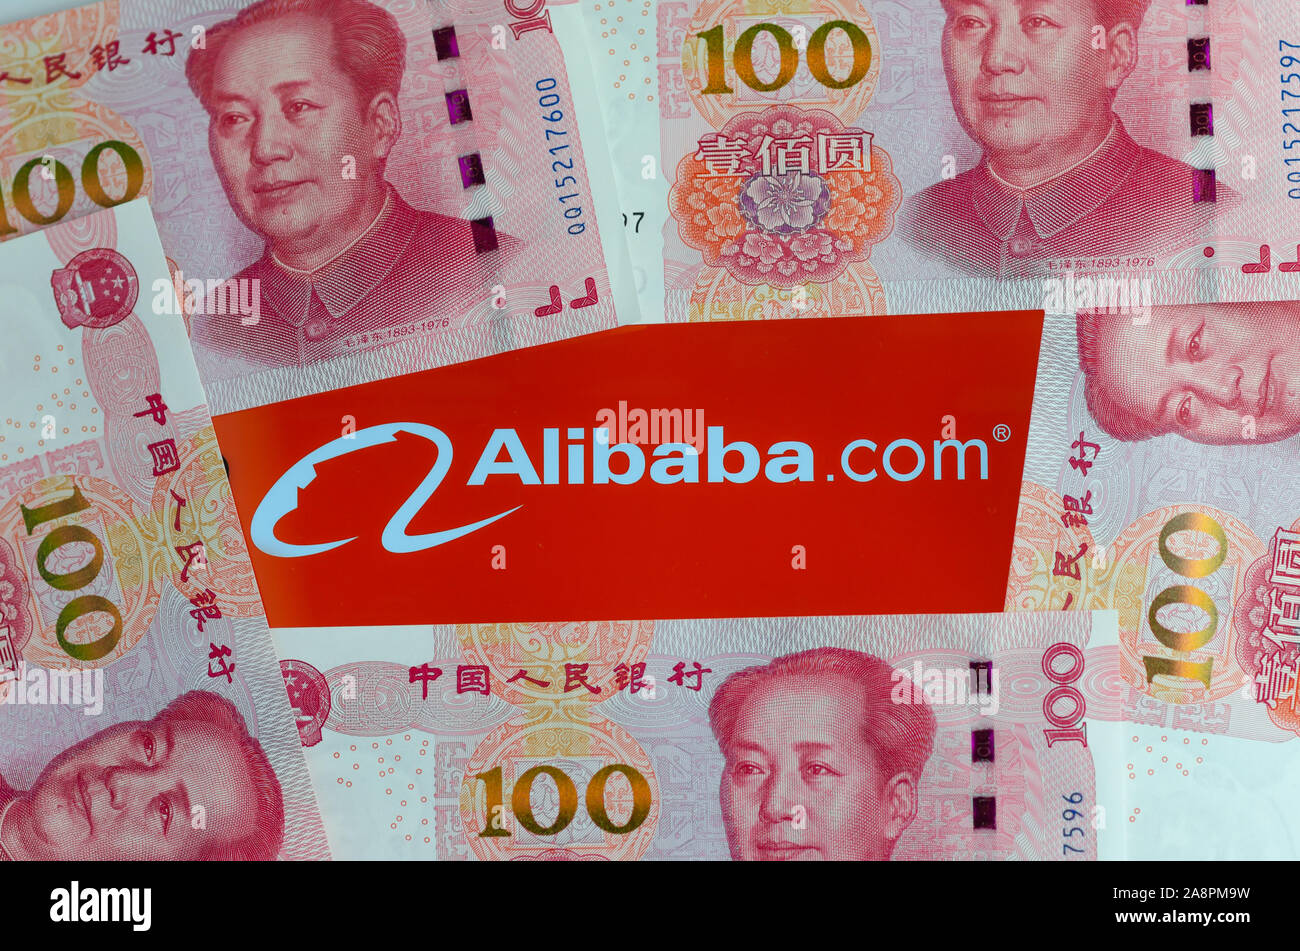 Alibaba logo à l'écran entouré de 100 yuan billets. Photo d'illustration éditoriale pour les nouvelles sur un niveau record de ventes en Chine. Banque D'Images